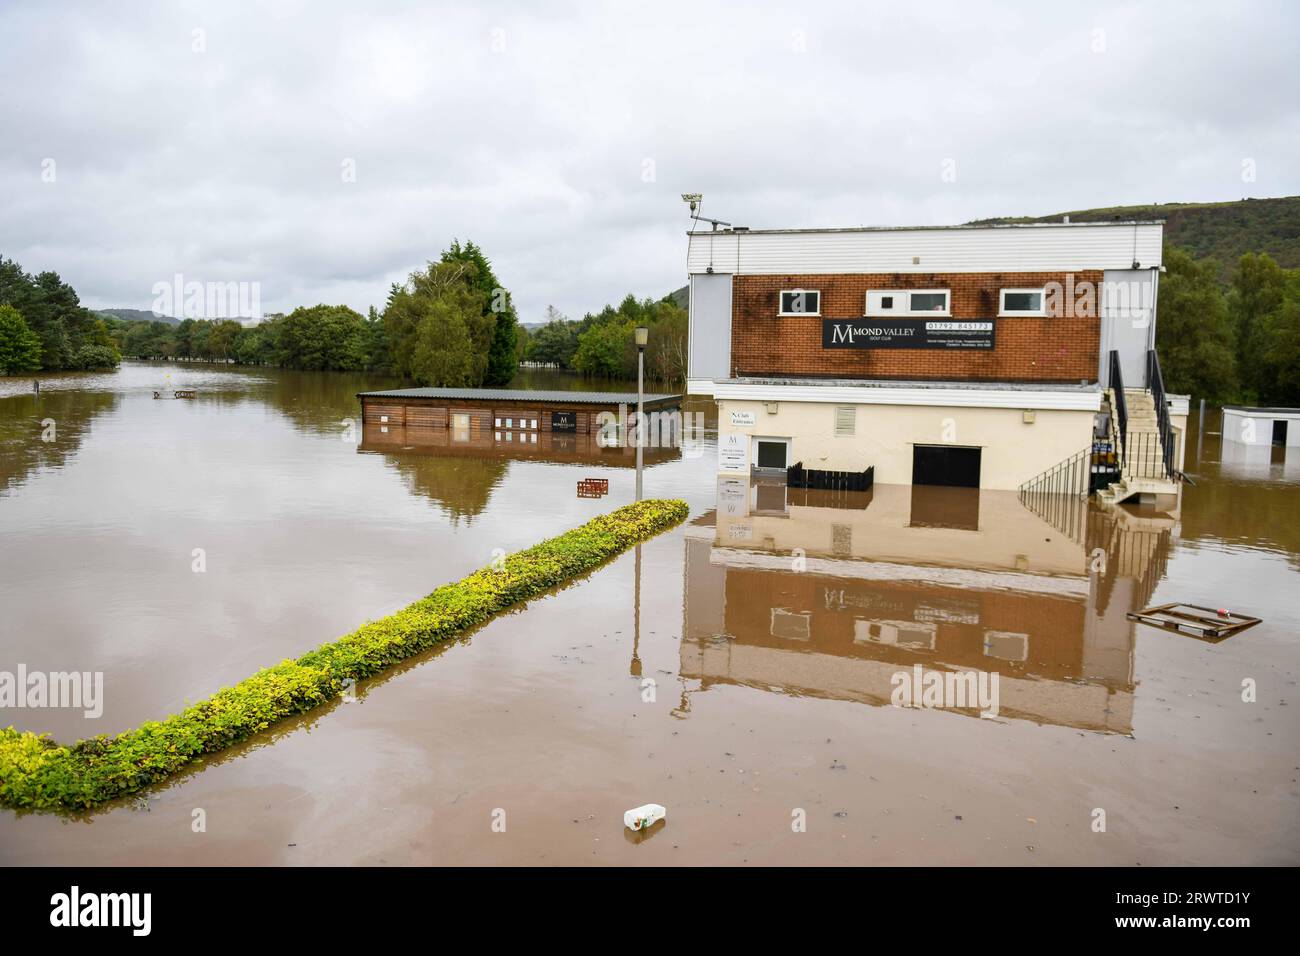 Swansea, le 20 septembre 2023, inondation la police météorologique britannique a fermé les routes autour du club de golf de Mond Valley près de Swansea après de fortes pluies dans la région ont causé des inondations. Un conducteur de camionnette a été laissé coincé après avoir essayé de traverser l'eau. Banque D'Images